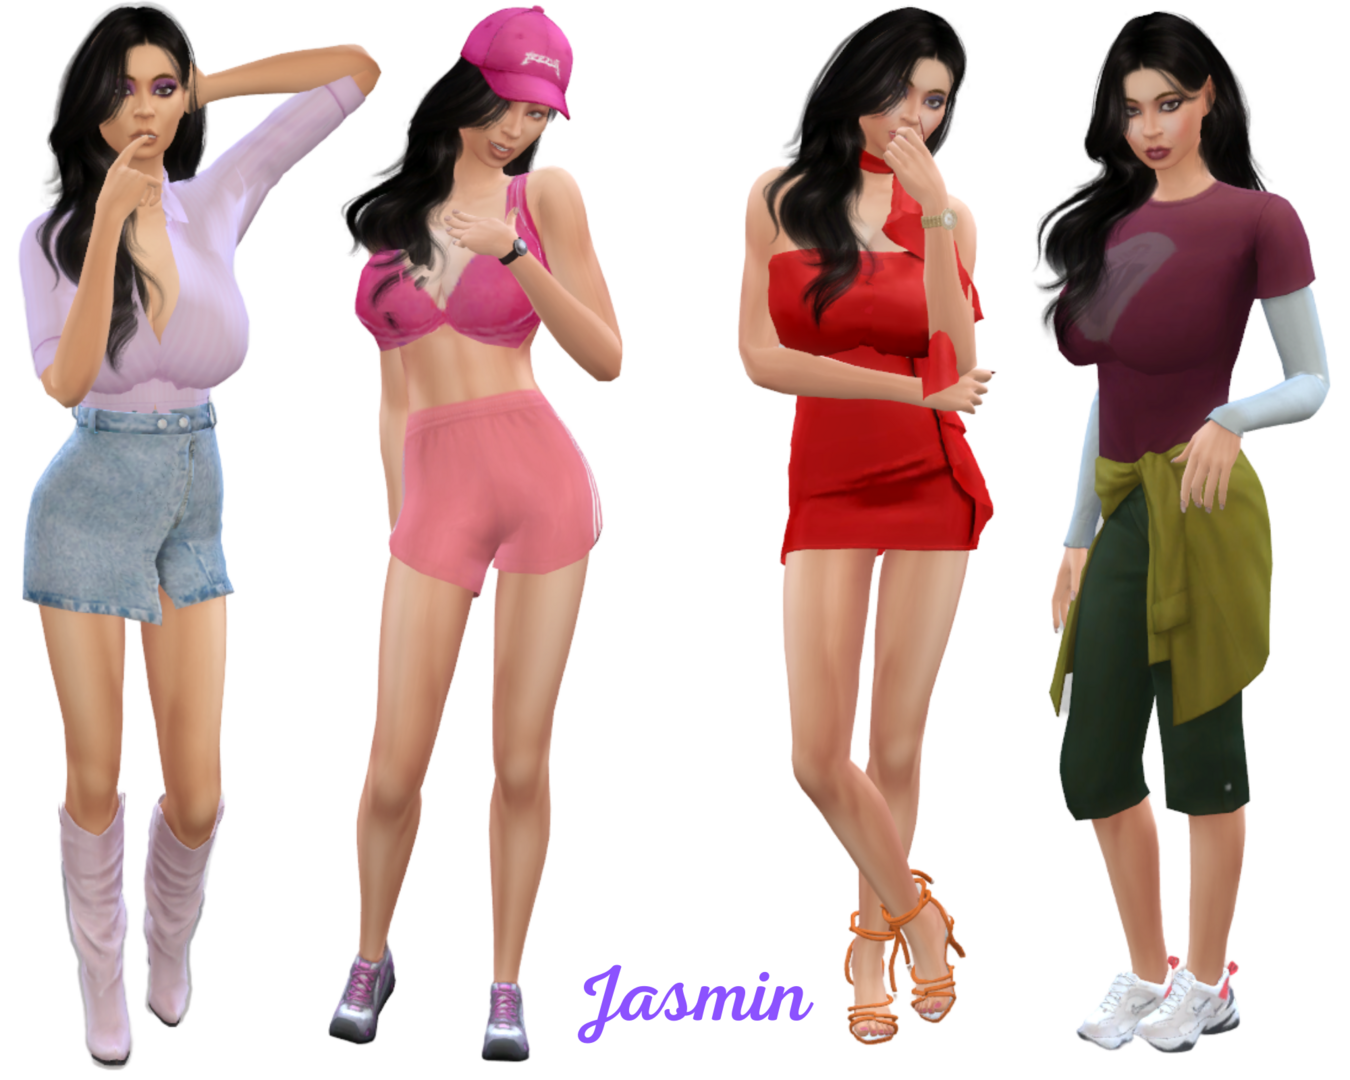 Jasmine.thumb.png.39a65265daad0f0e1a6e469e5738c995.png